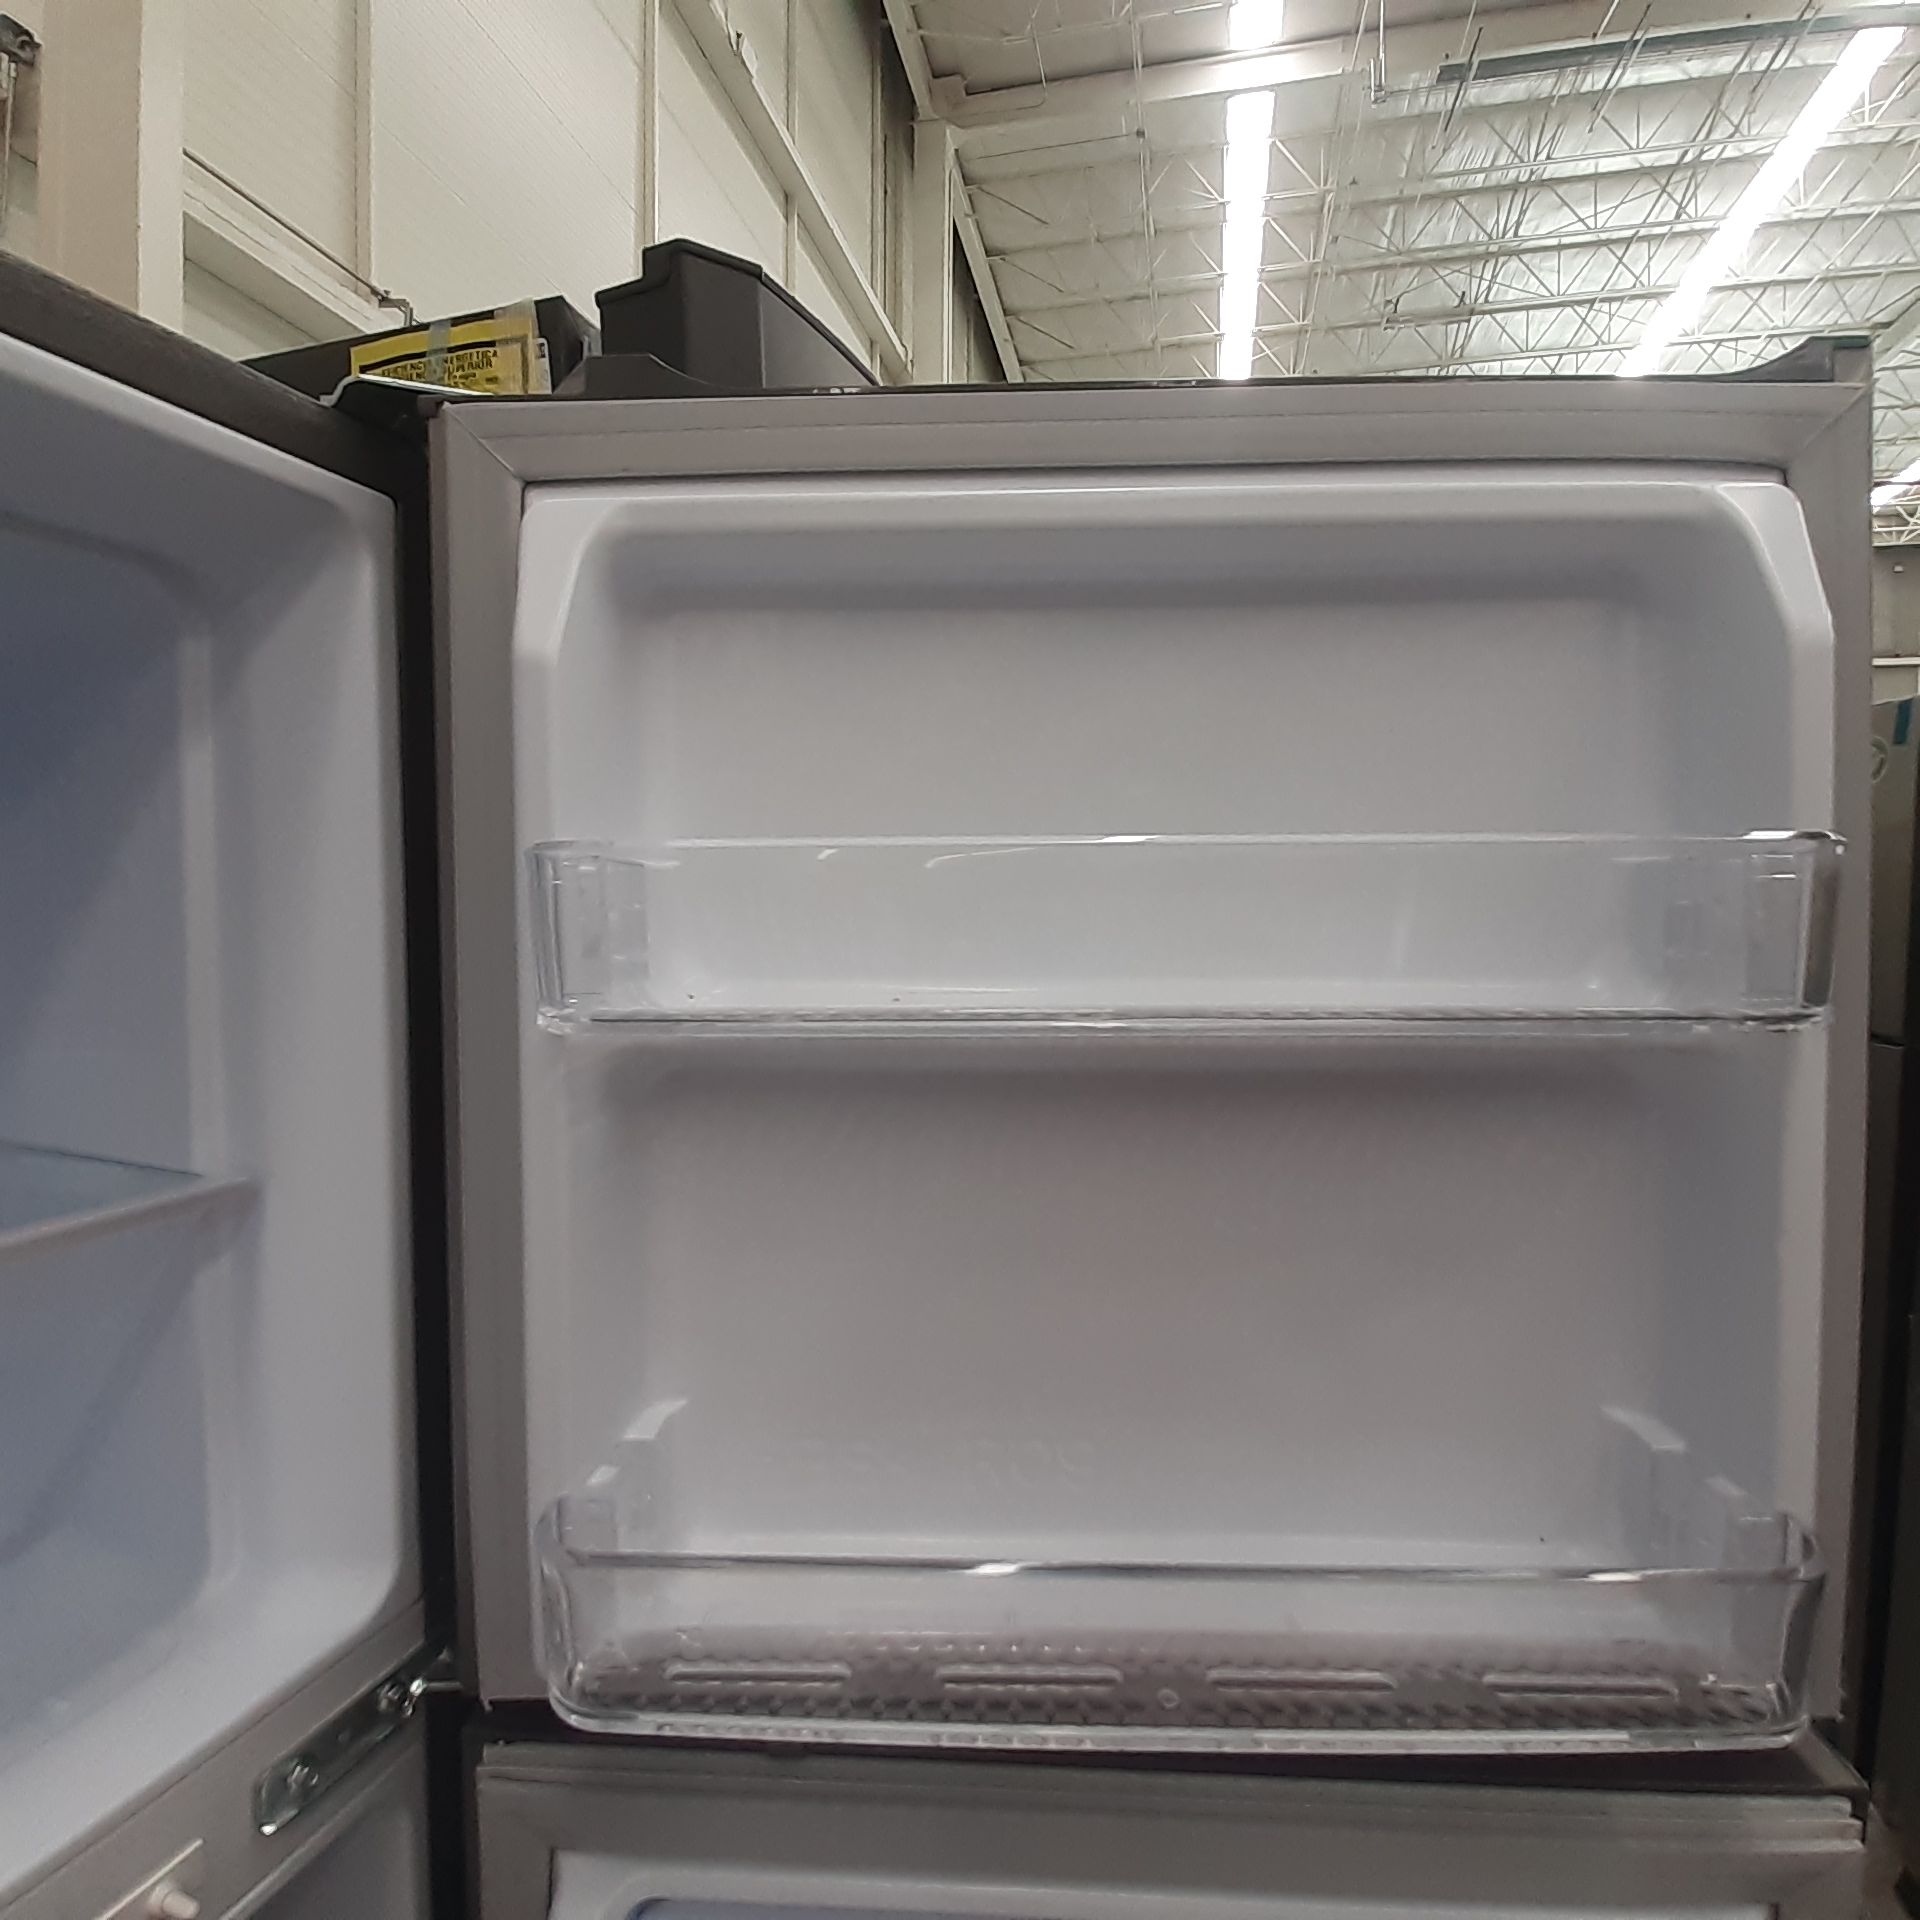 Lote De 2 Refrigeradores: 1 Refrigerador Marca Mabe, 1 Refrigerador Marca Winia, Distintos Modelos - Image 18 of 23